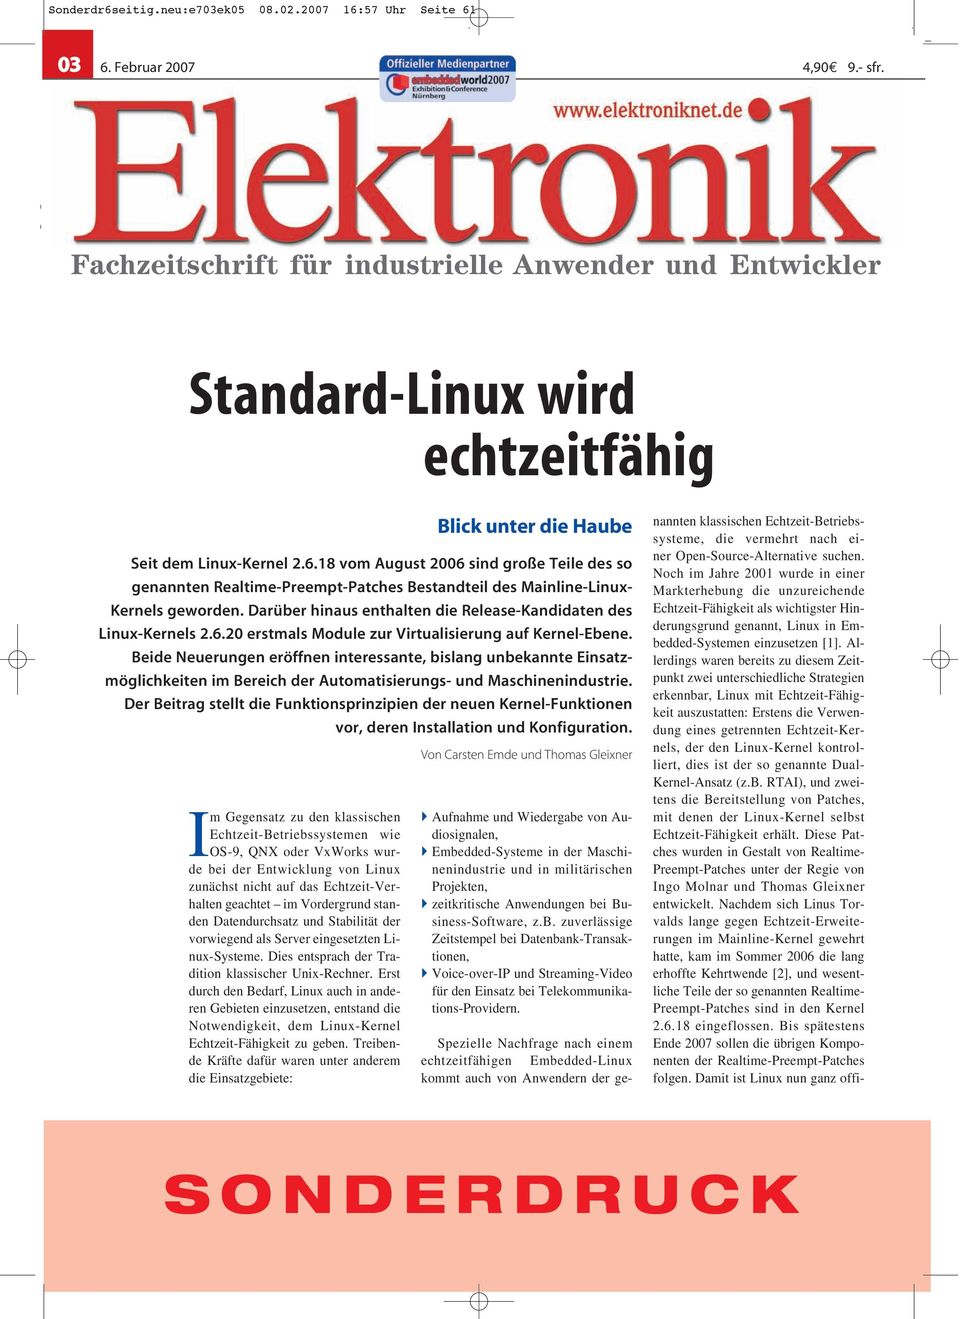 Entwicklung von Linux zunächst nicht auf das Echtzeit-Verhalten geachtet im Vordergrund standen Datendurchsatz und Stabilität der vorwiegend als Server eingesetzten Linux-Systeme.